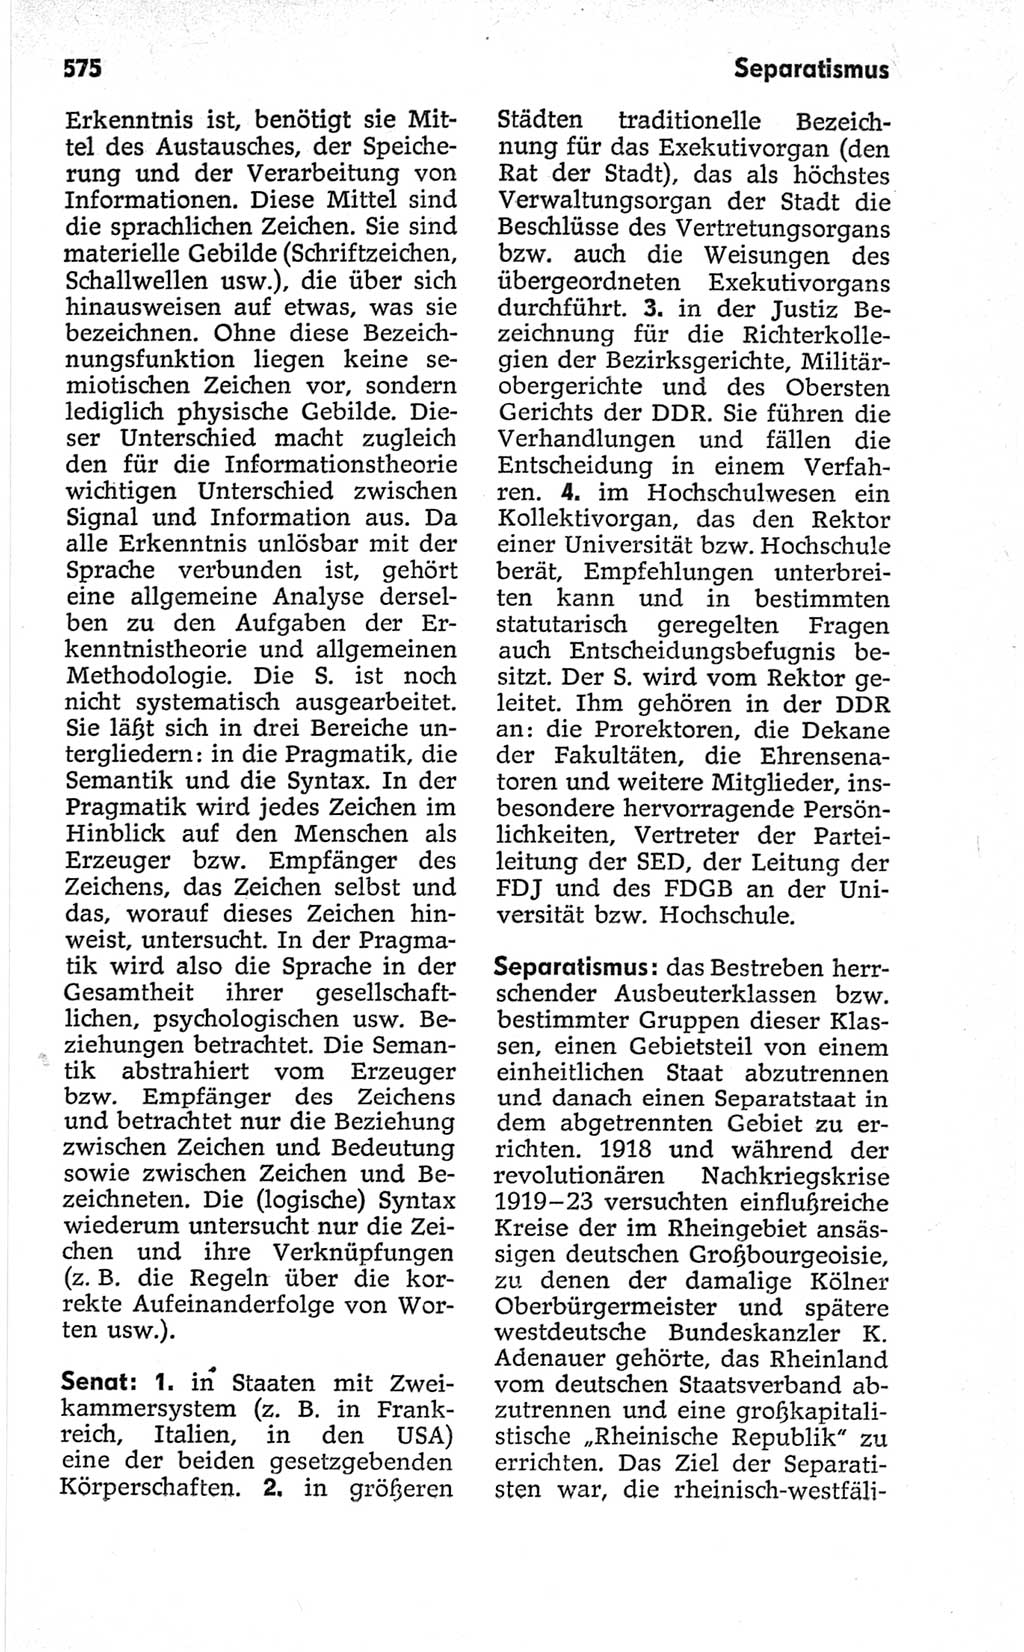 Kleines politisches Wörterbuch [Deutsche Demokratische Republik (DDR)] 1967, Seite 575 (Kl. pol. Wb. DDR 1967, S. 575)